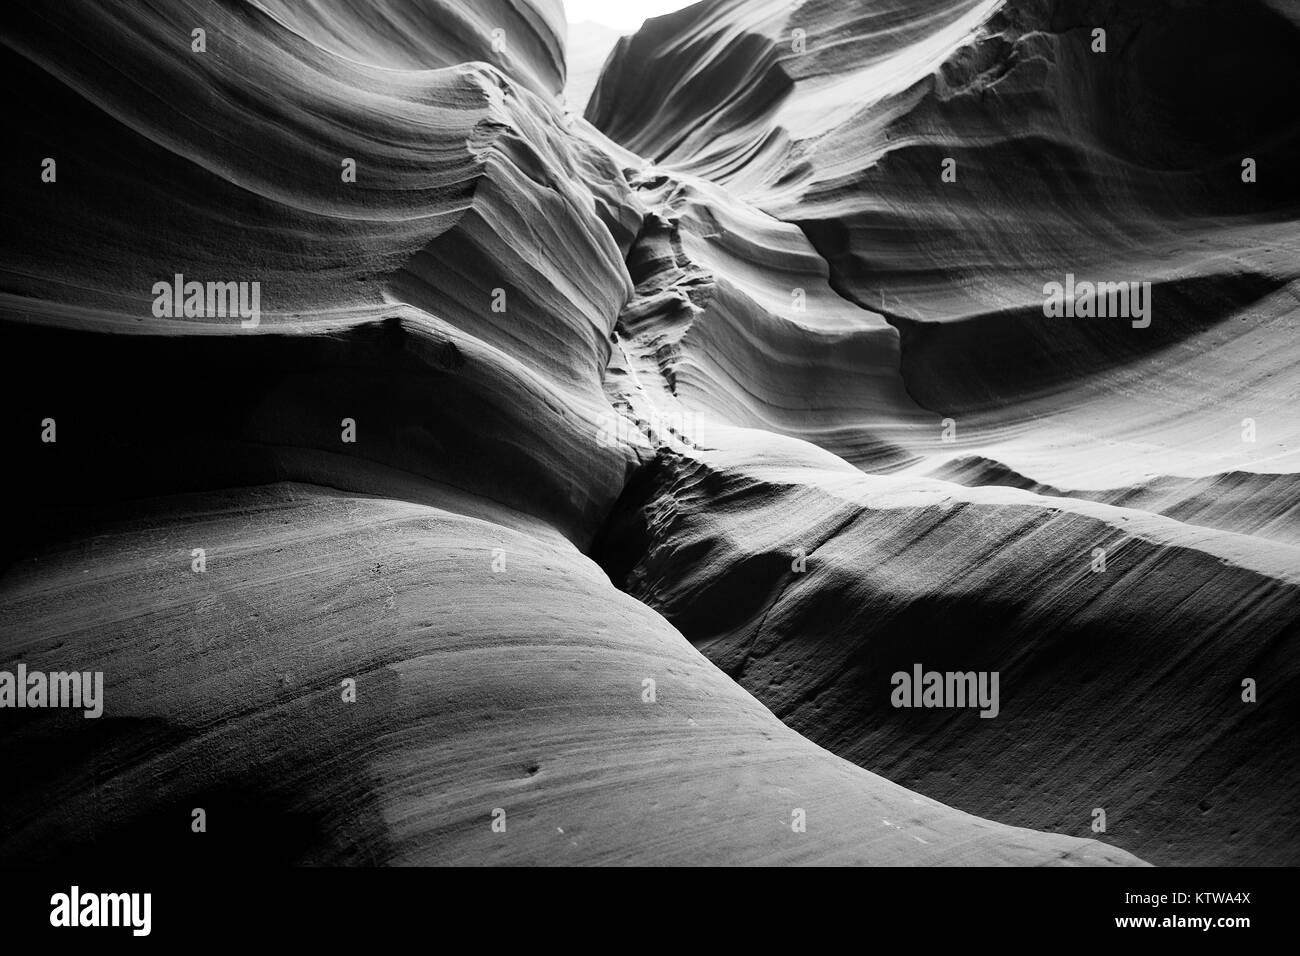 Pagina, Arizona, Stati Uniti. - Aprile 2015: un raggio di luce si rompe attraverso una apertura nella Antelope Canyon. Foto Stock